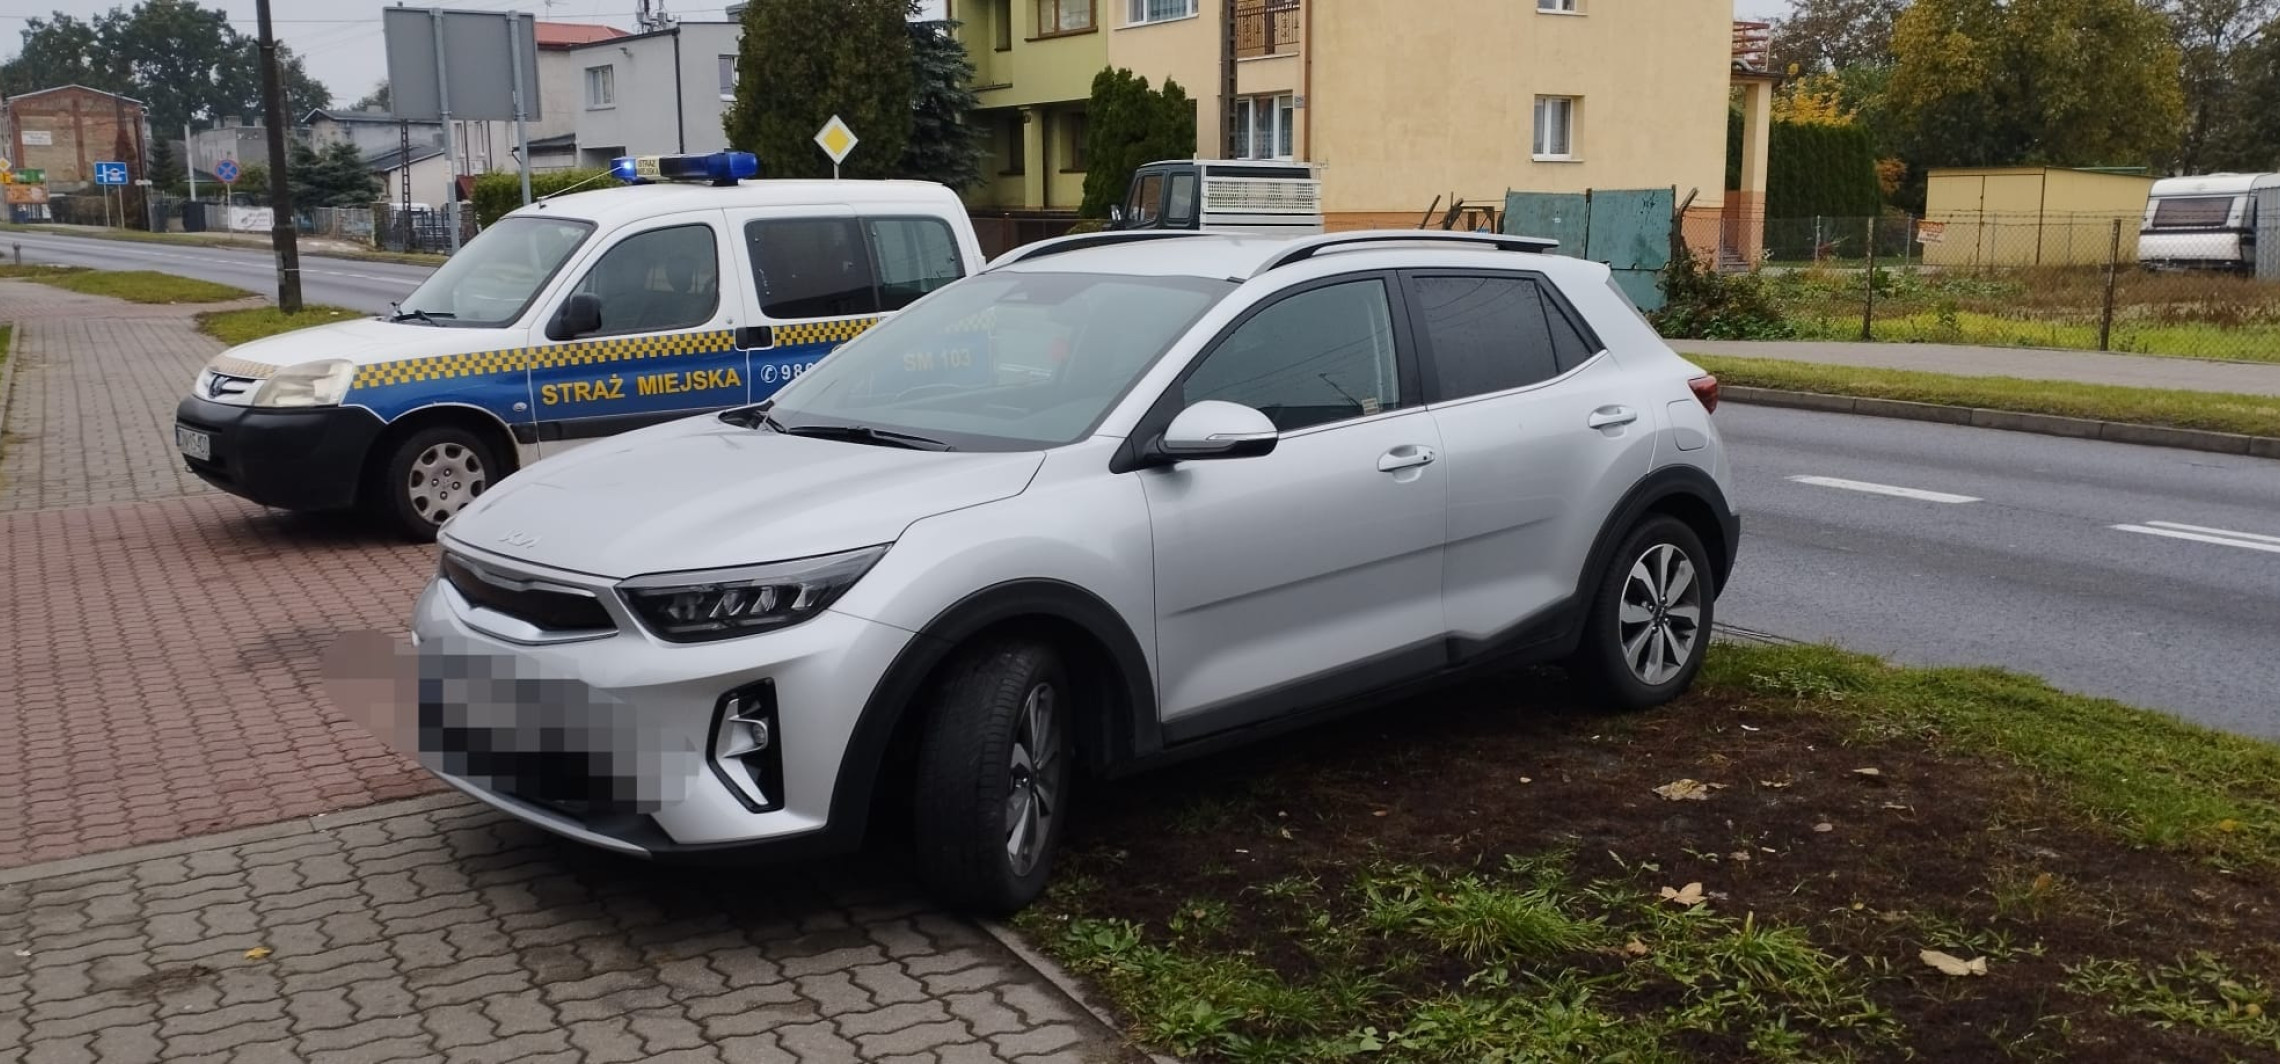 Inowrocław - Tu nie wolno parkować. Ci kierowcy złamali ten zakaz